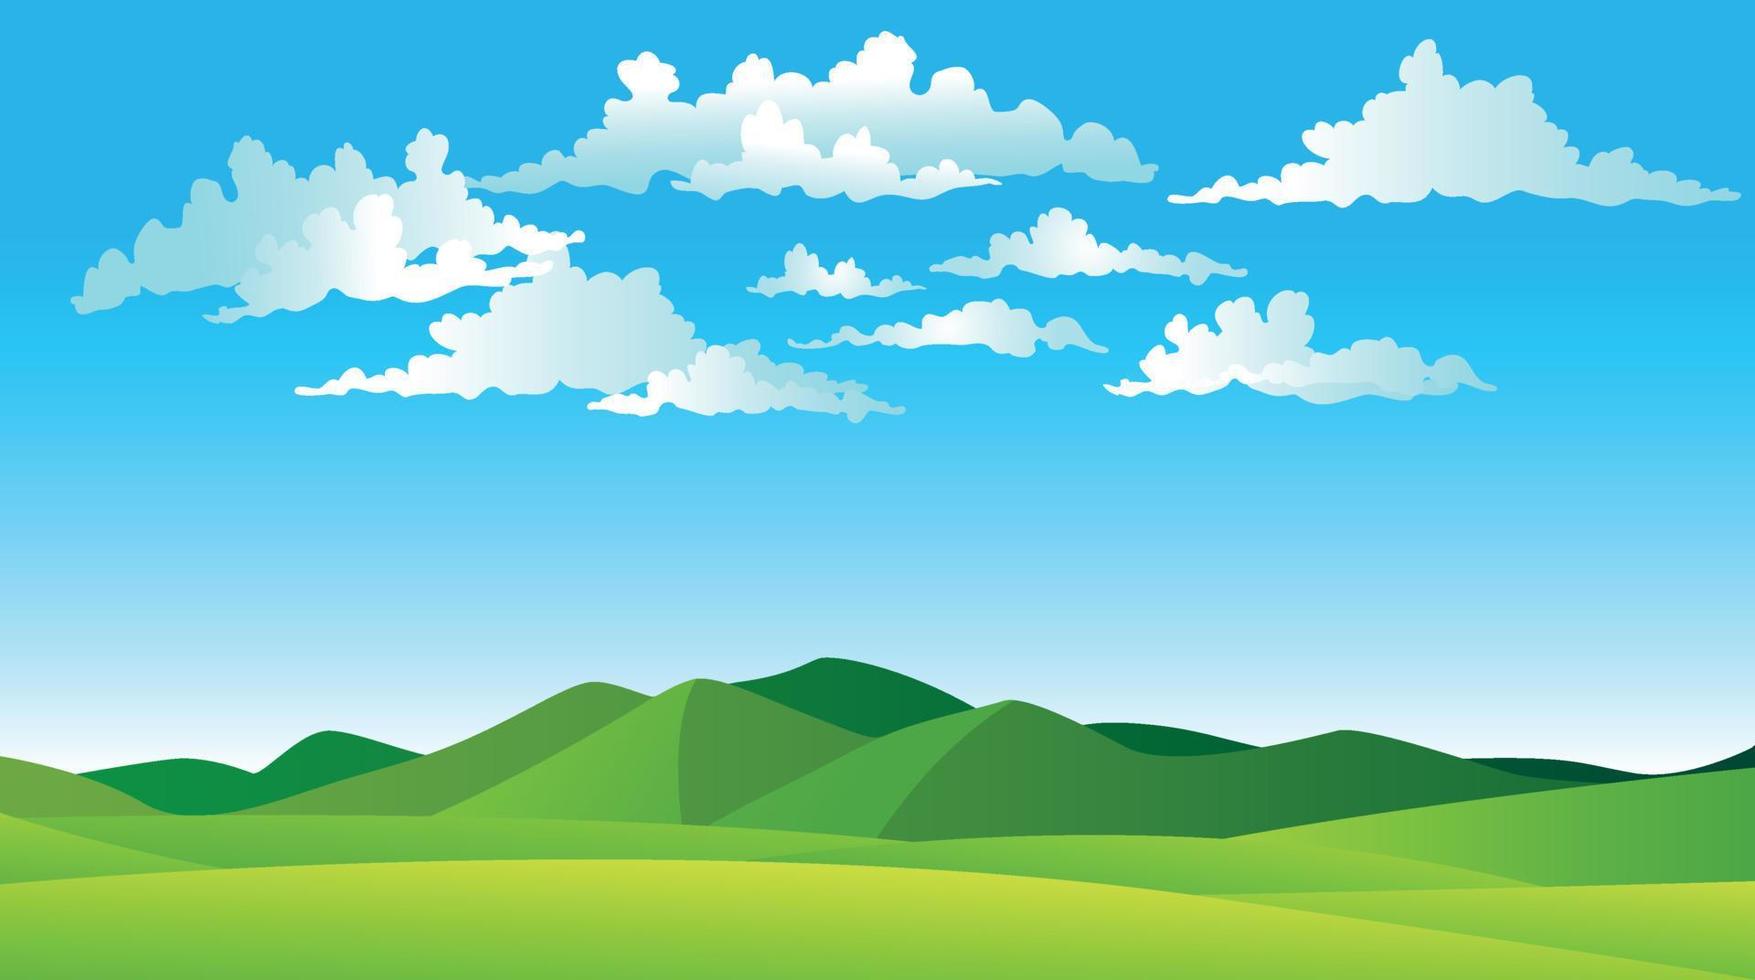 vektorillustration von schönen sommerlandschaftsfeldern, grünen hügeln, heller farbe des blauen himmels, landhintergrund in der flachen bannerkarikaturart vektor